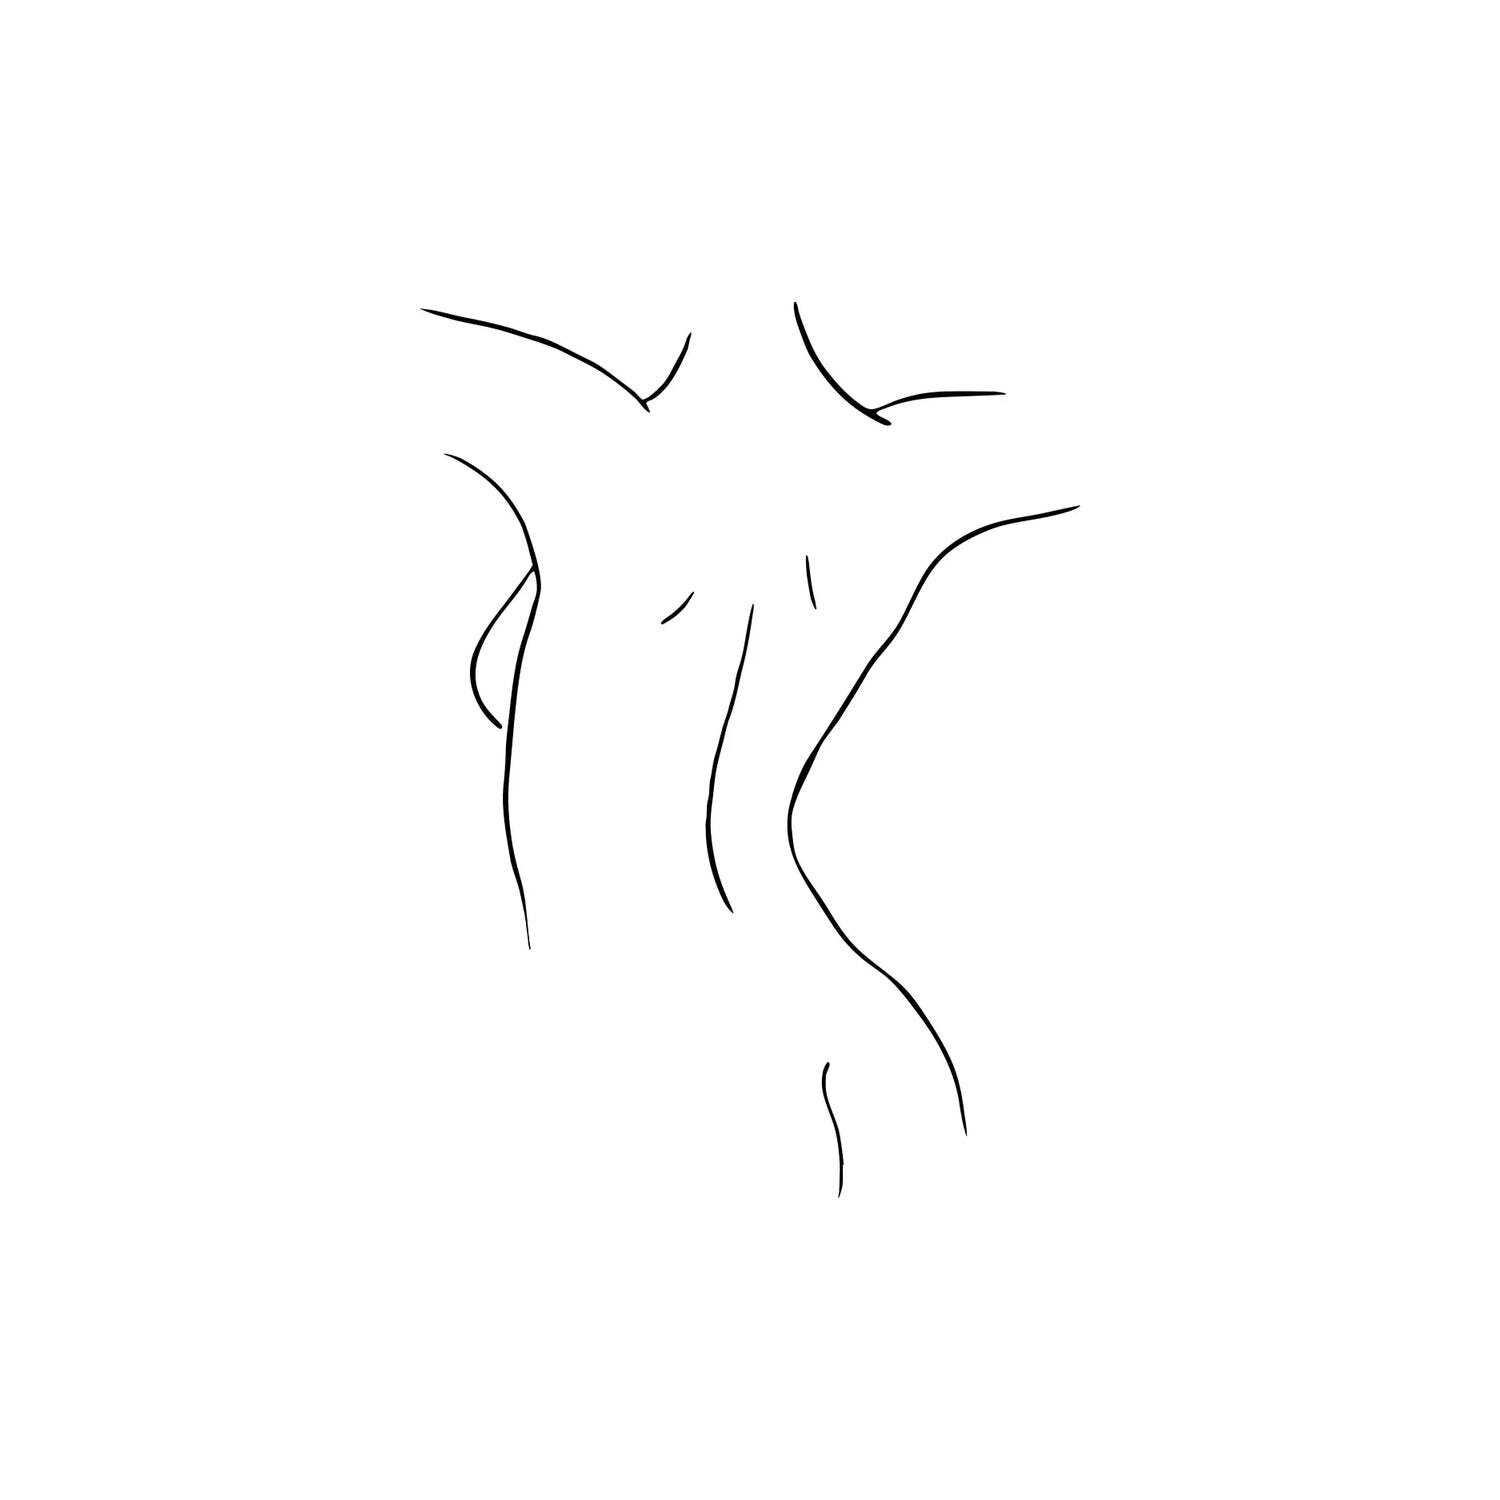 Female Body Sketch